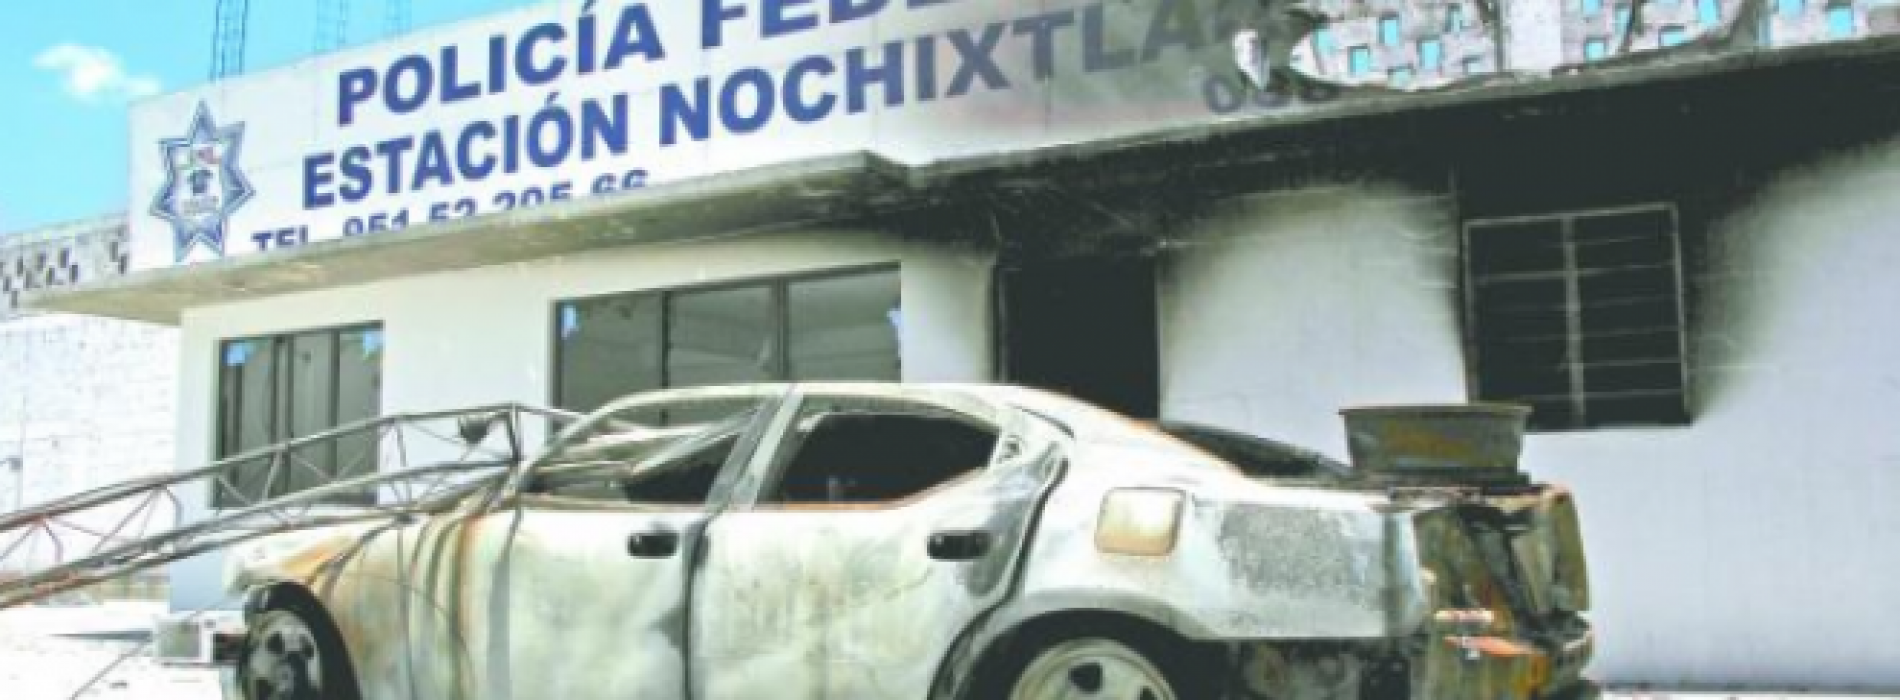 71 % de las denuncias por tortura en Oaxaca están en la congeladora